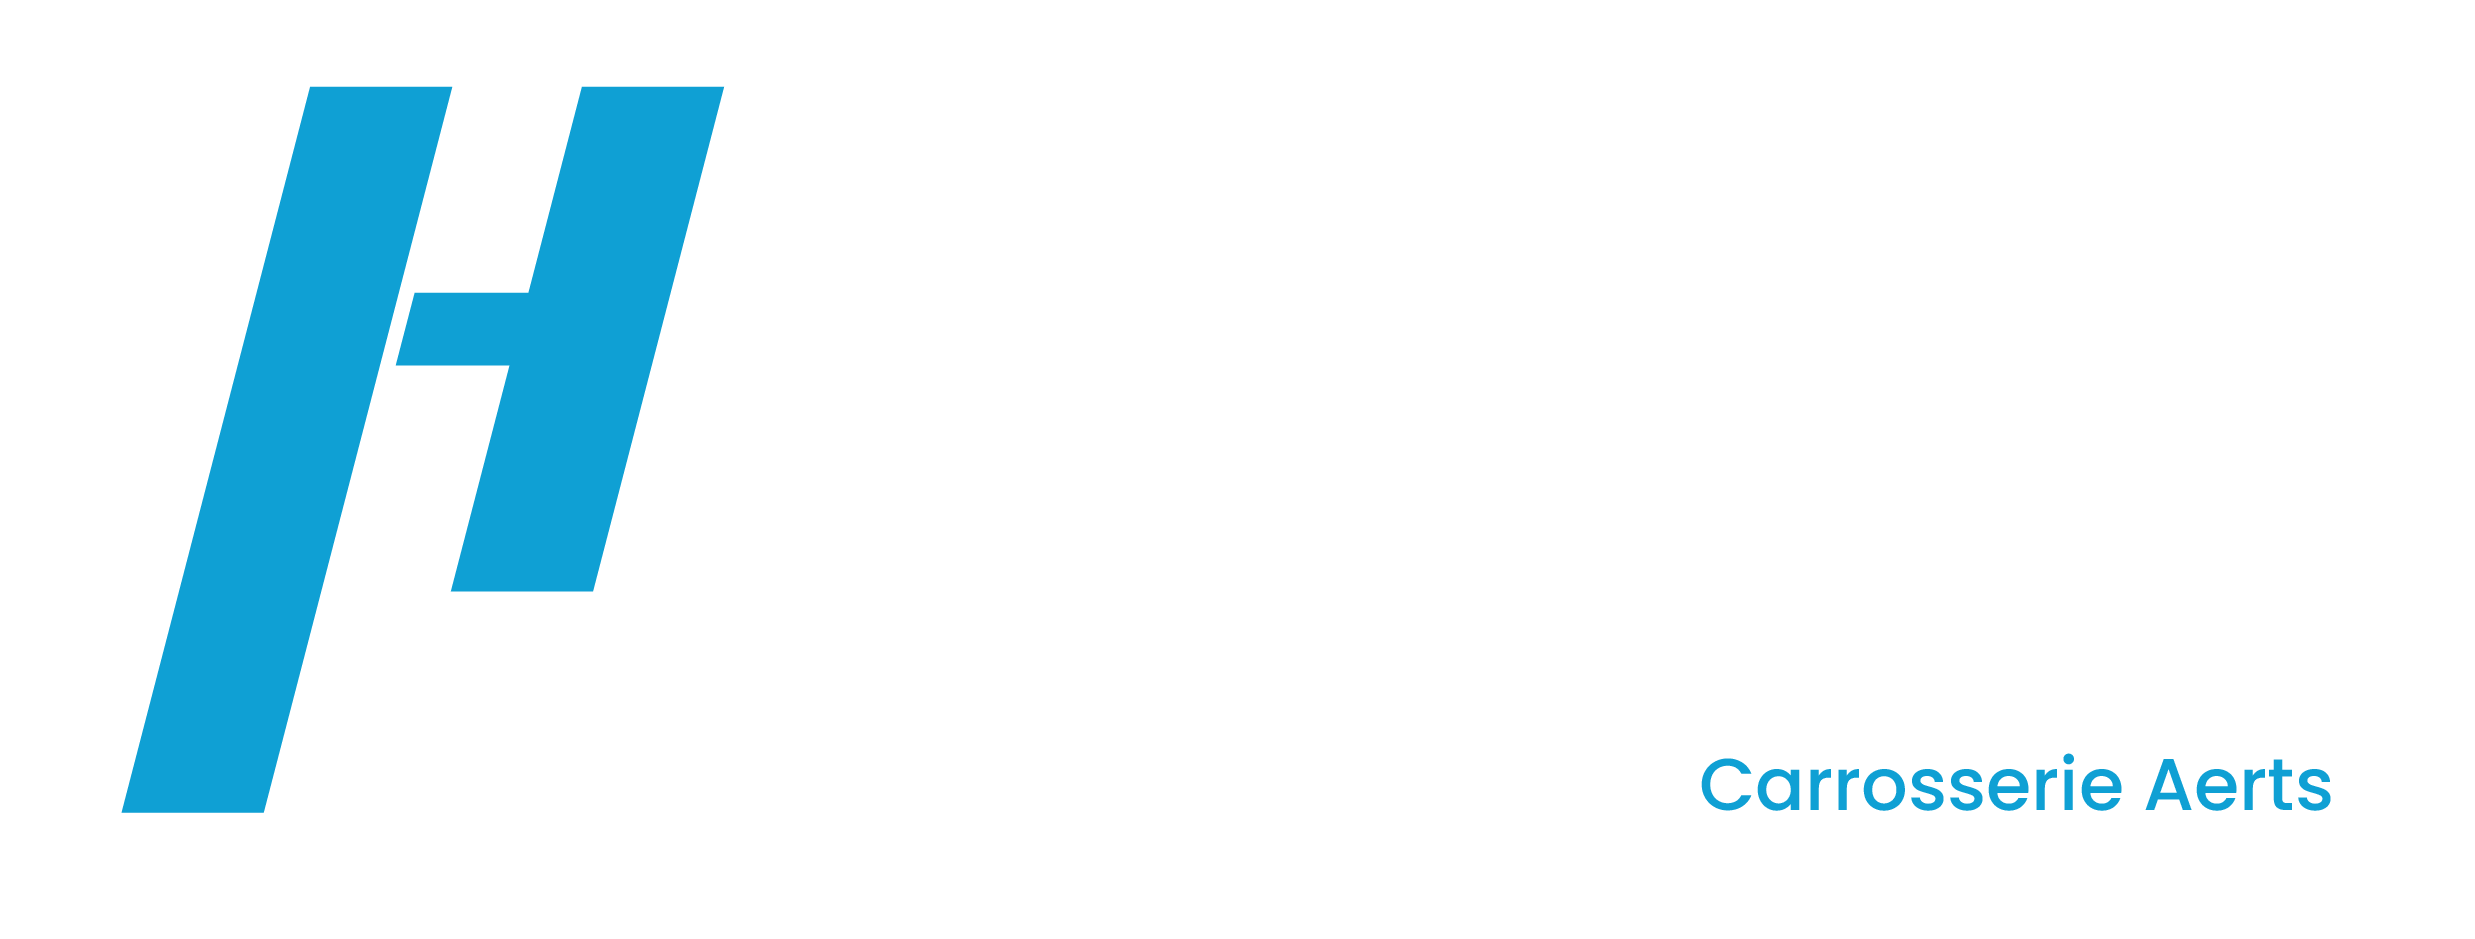 Carrosserie Heyman